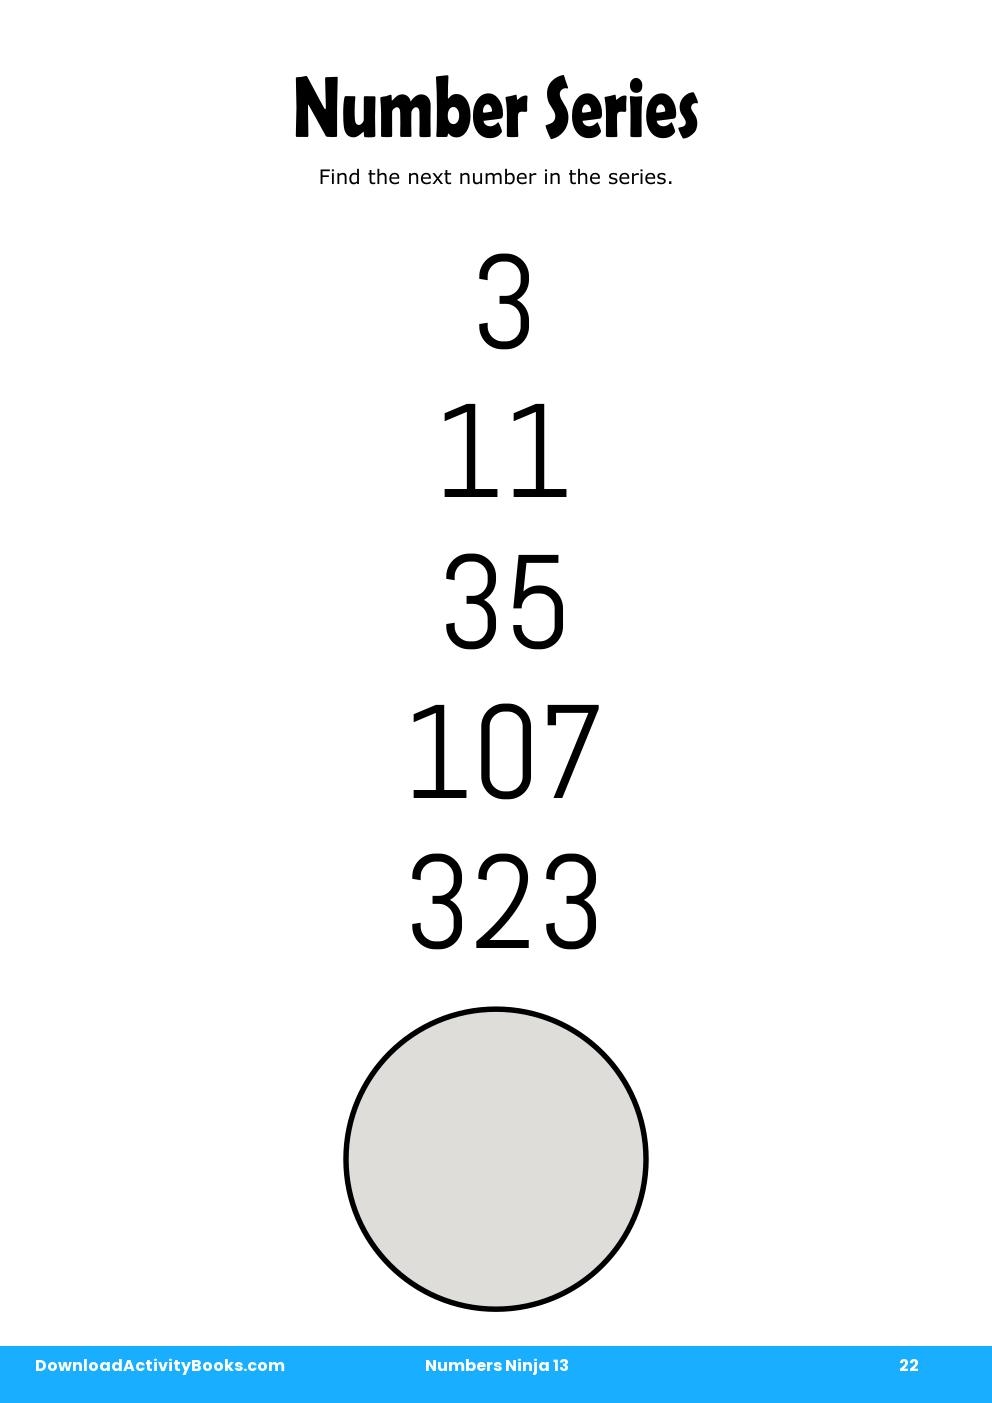 Number Series in Numbers Ninja 13